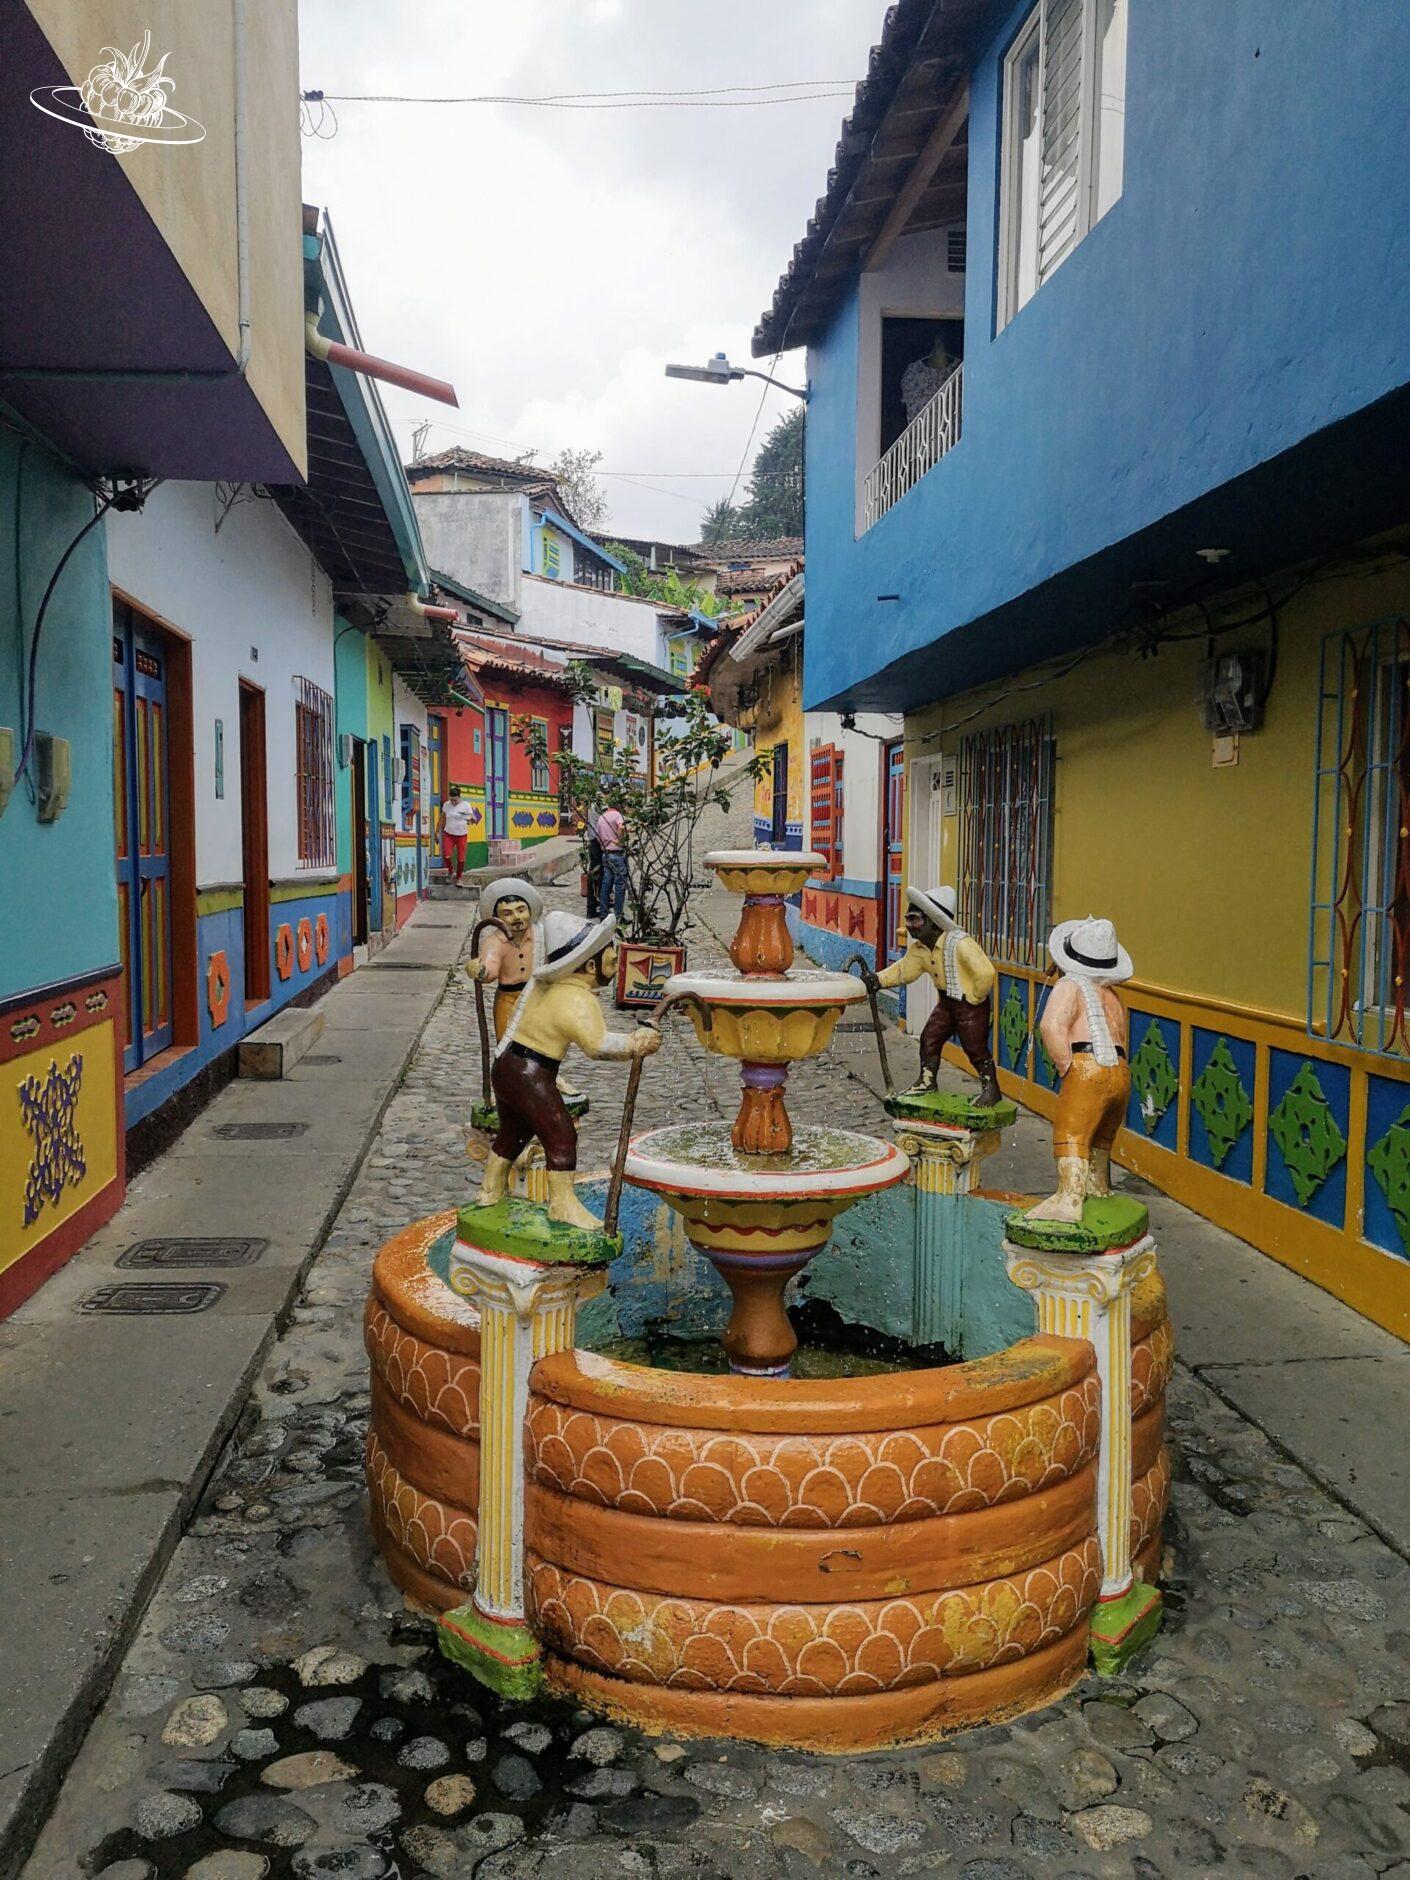 Farbiger Brunnen mit kleinen Figuren darauf